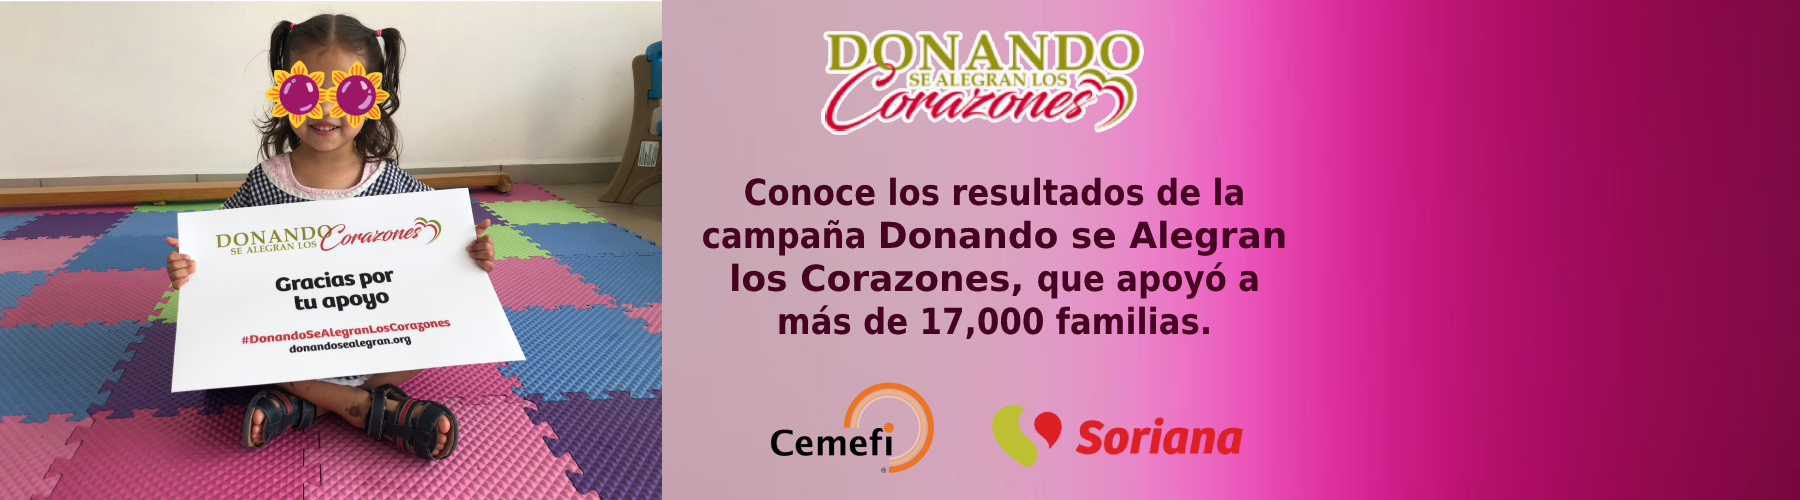 Conoce los resultados de la campaña Donando se Alegran los Corazones, que apoyó a más de 17,000 familias